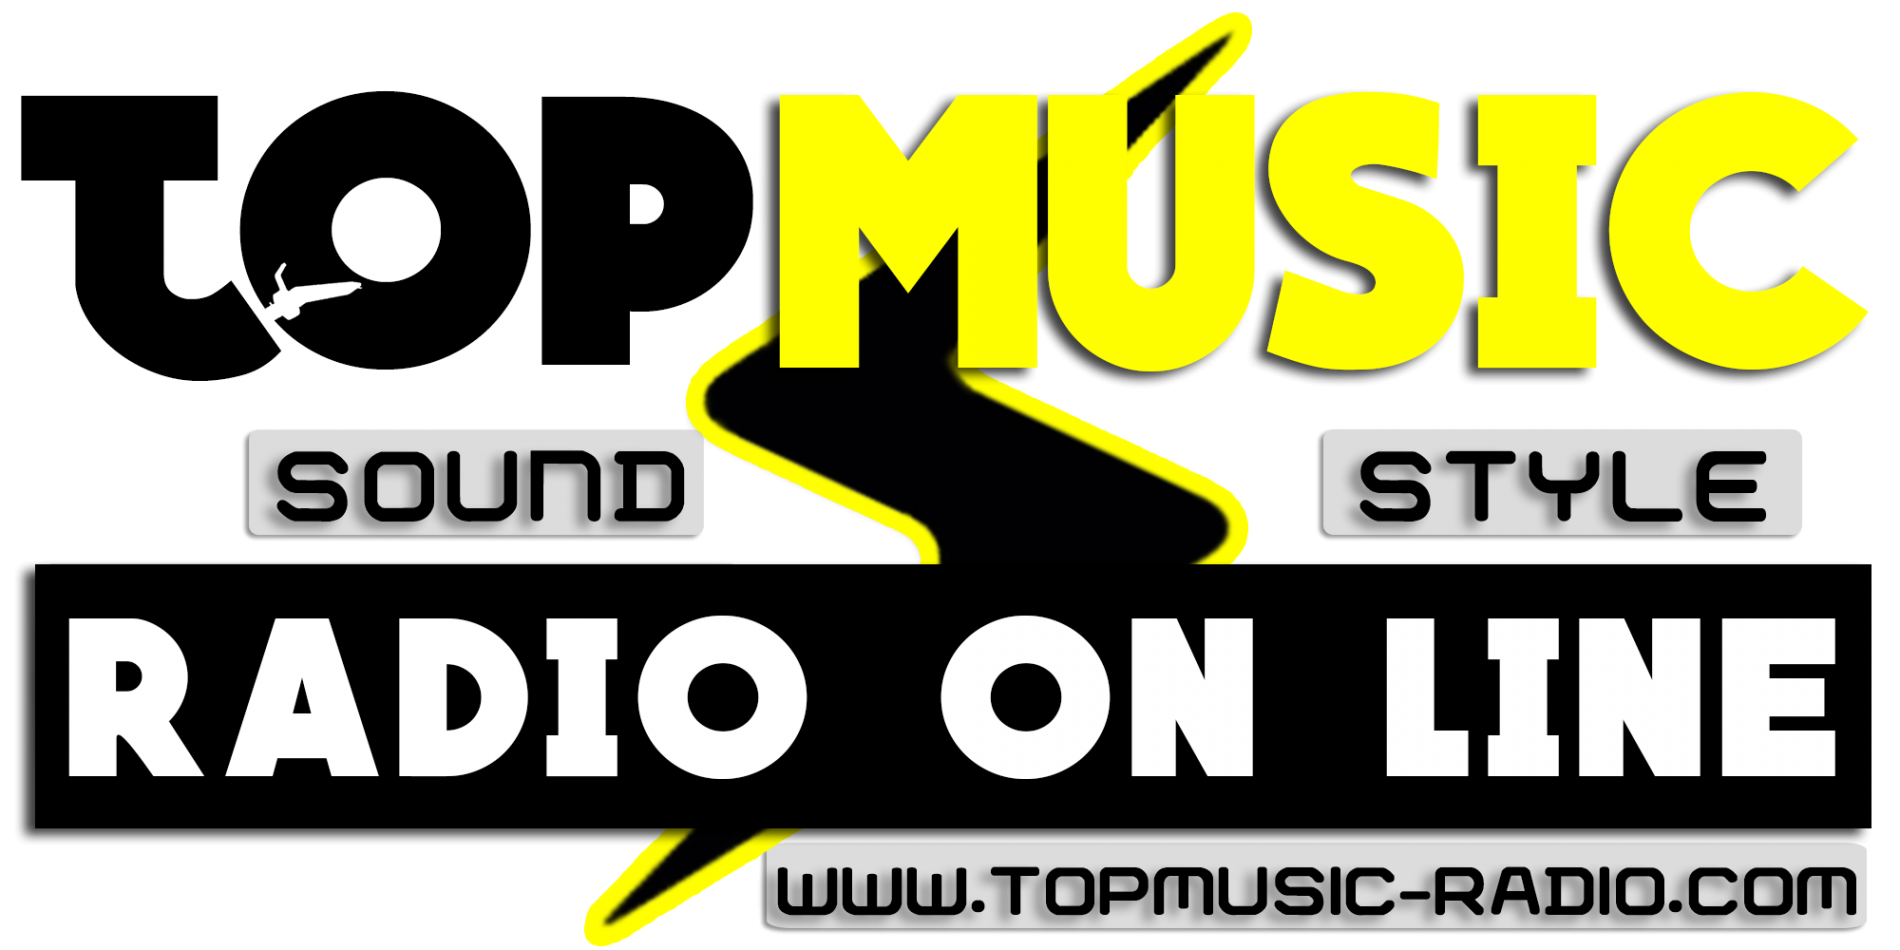 (c) Topmusic-radio.com